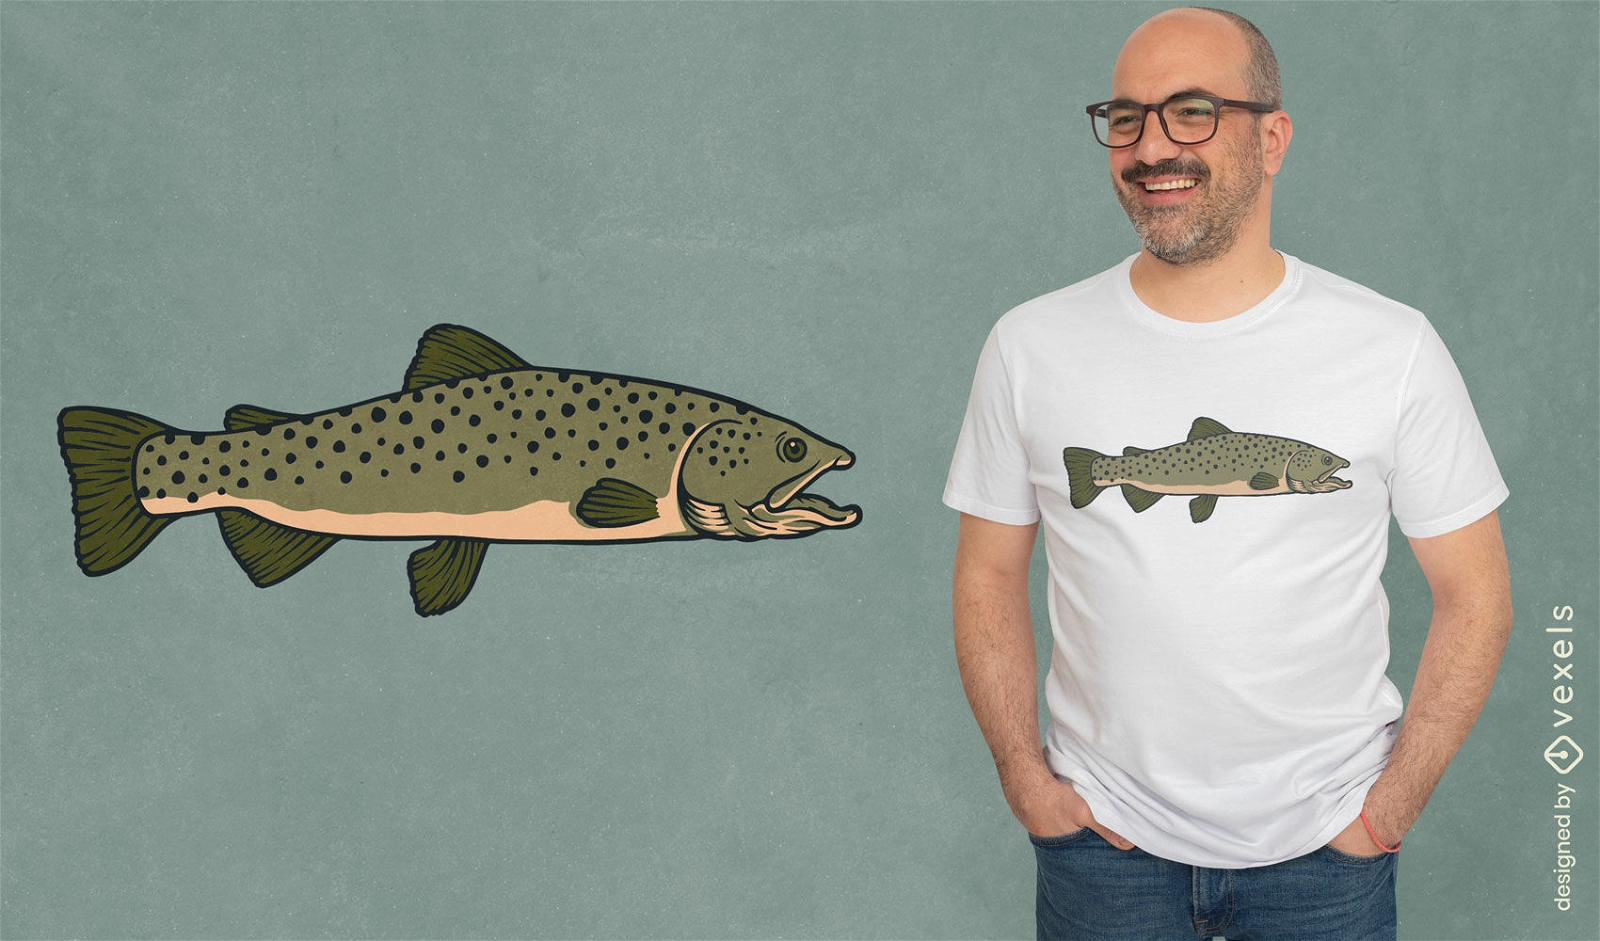 Dise?o de camiseta de nataci?n de animales marinos de peces realistas